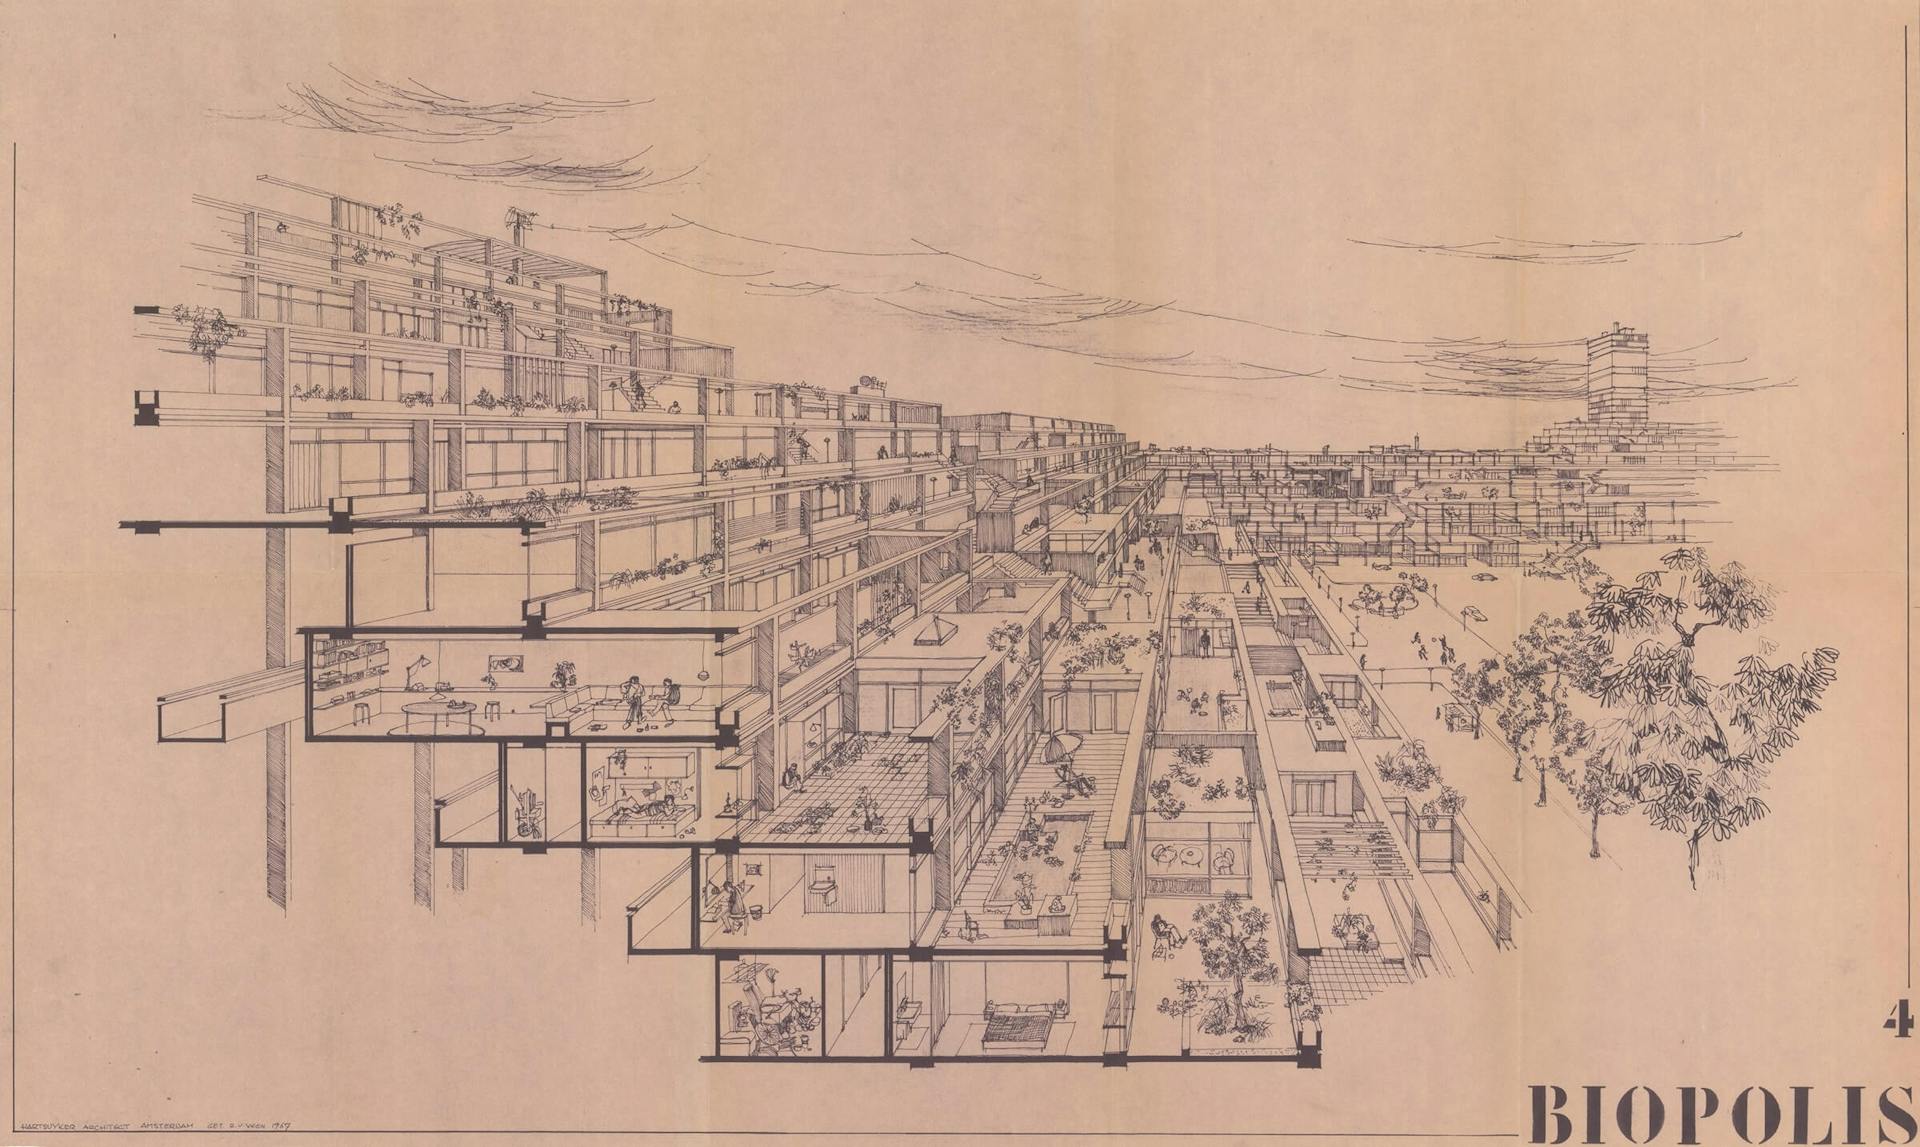 E. Hartsuyker en L. Hartsuyker-Curjel. Woningbouwproject Biopolis, 1963-1964. Collectie Het Nieuwe Instituut, HART t49  